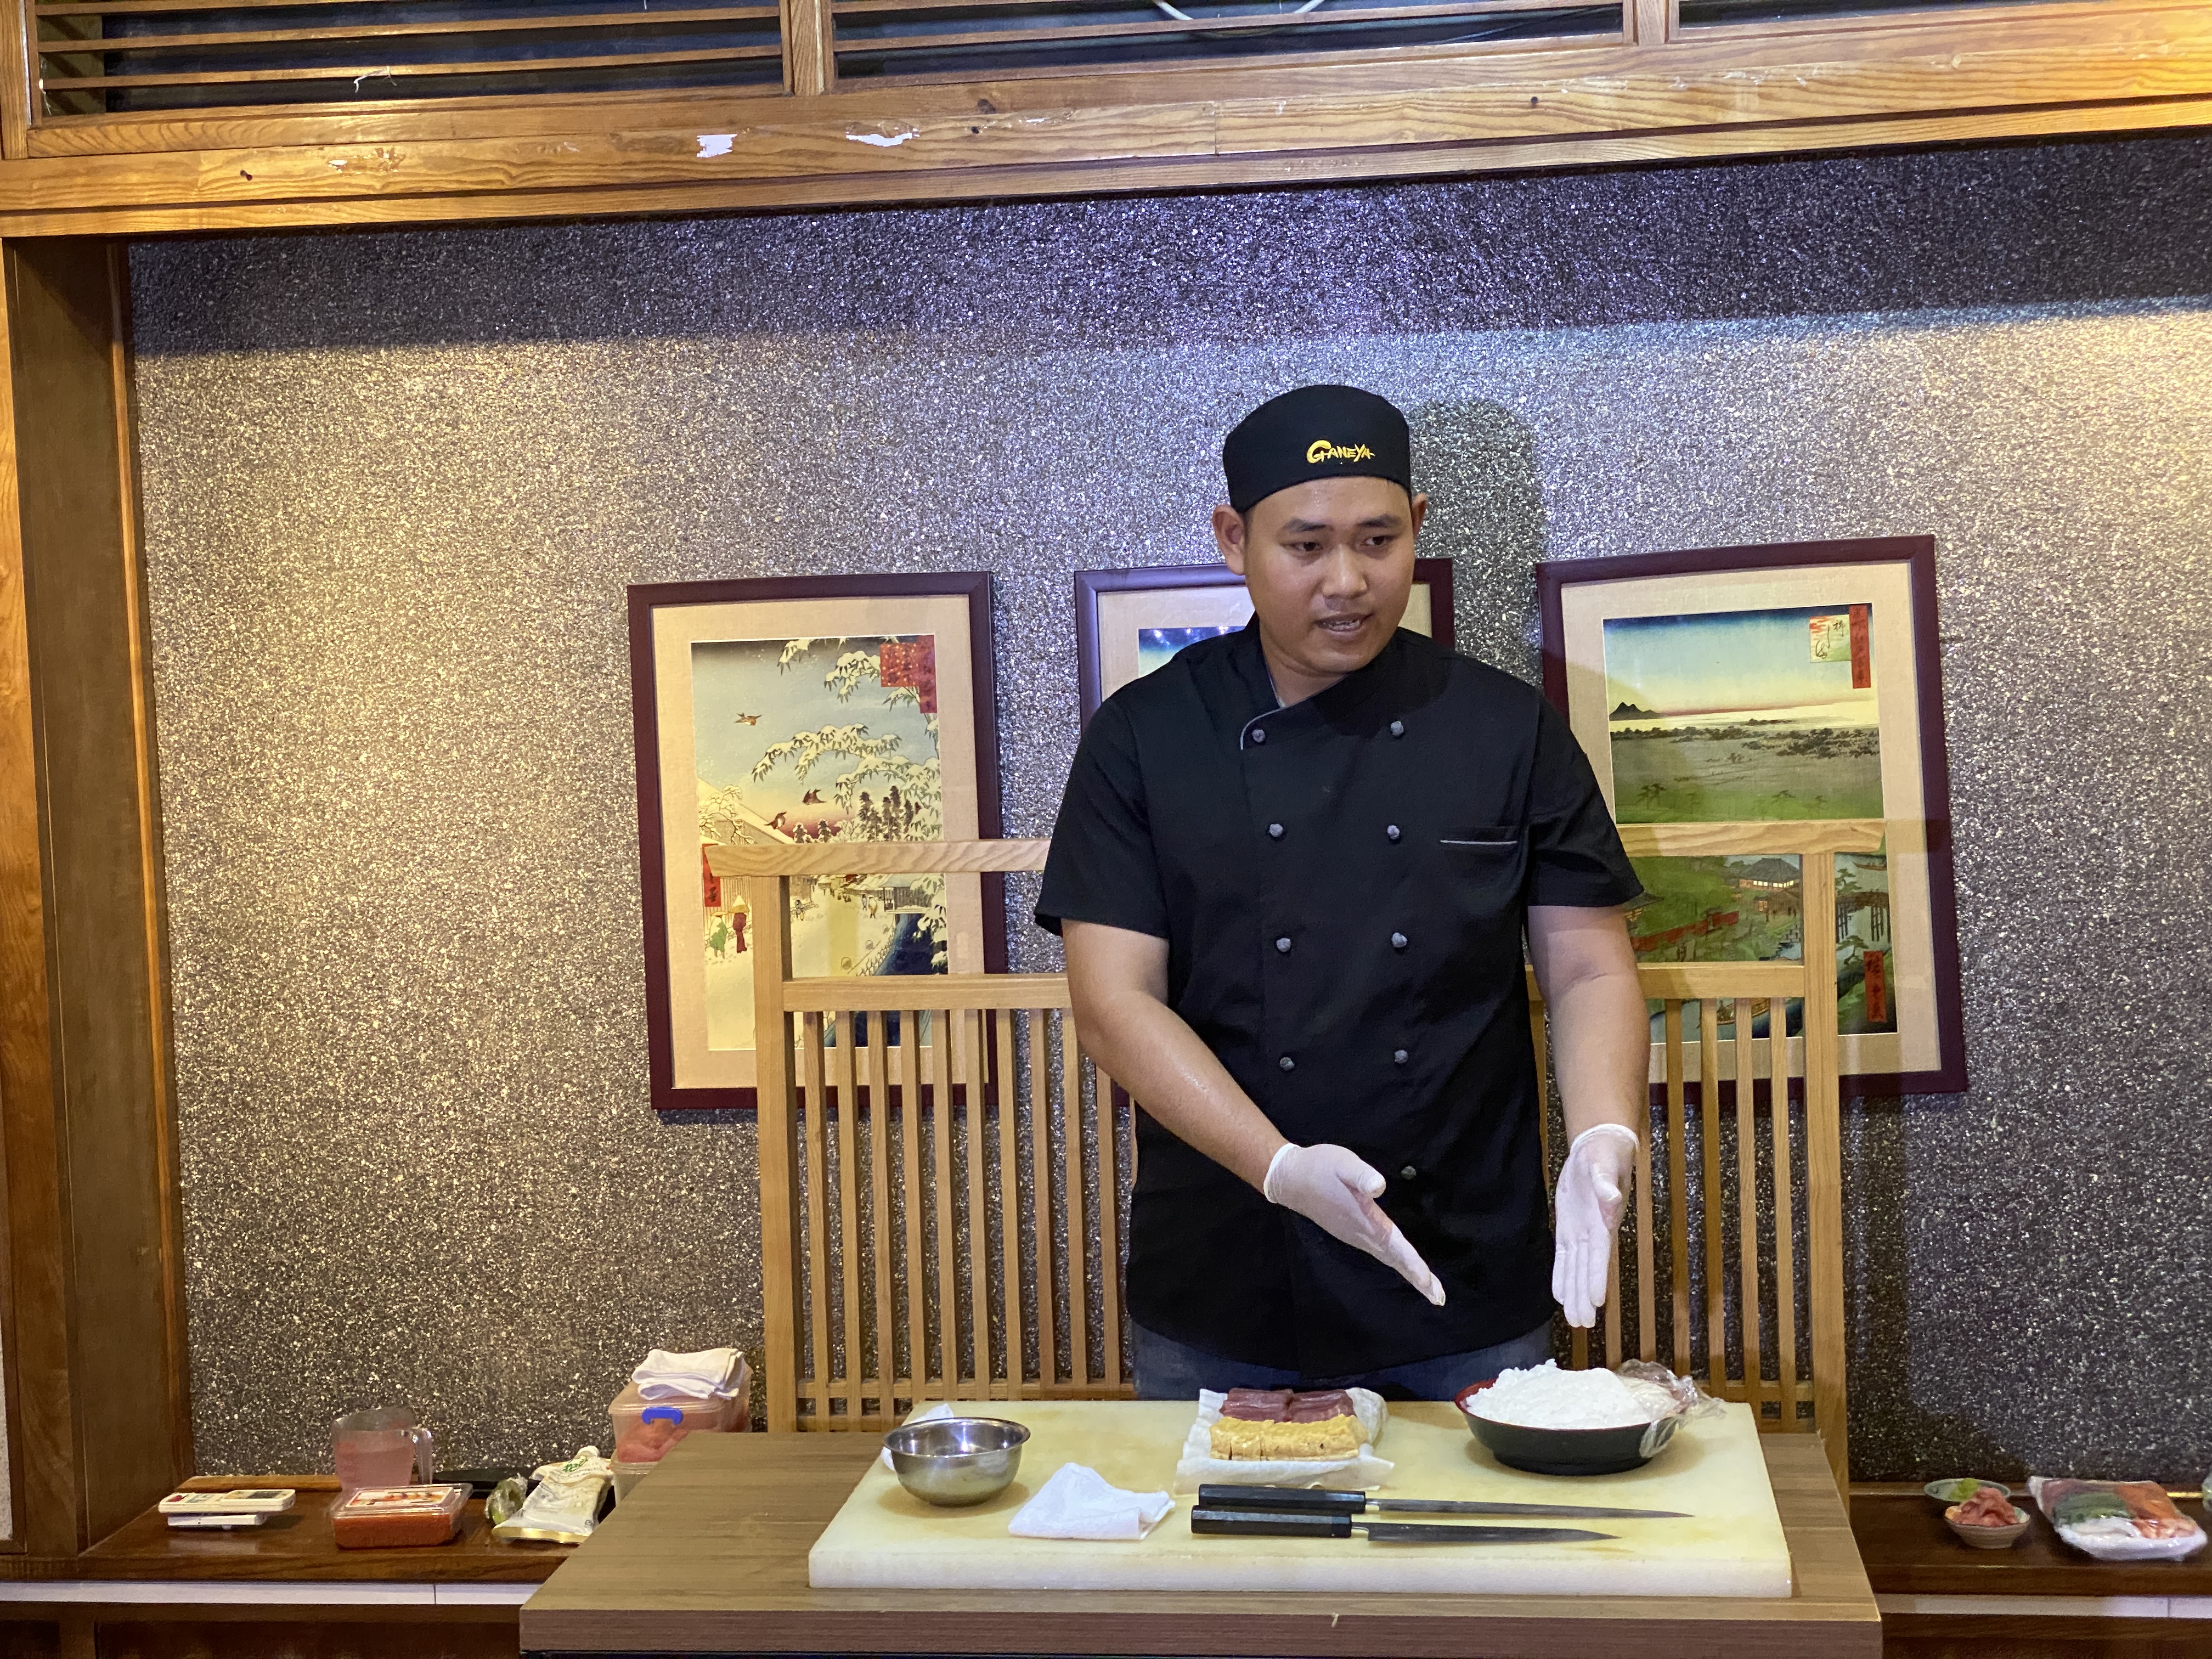 Đầu bếp sushi Trần Quang Hiệp với 7 năm kinh nghiệm làm sushi tại Nhật Bản giới thiệu về cách làm sushi dưới sự chứng kiến của giáo sư. Ảnh: Anh Vũ